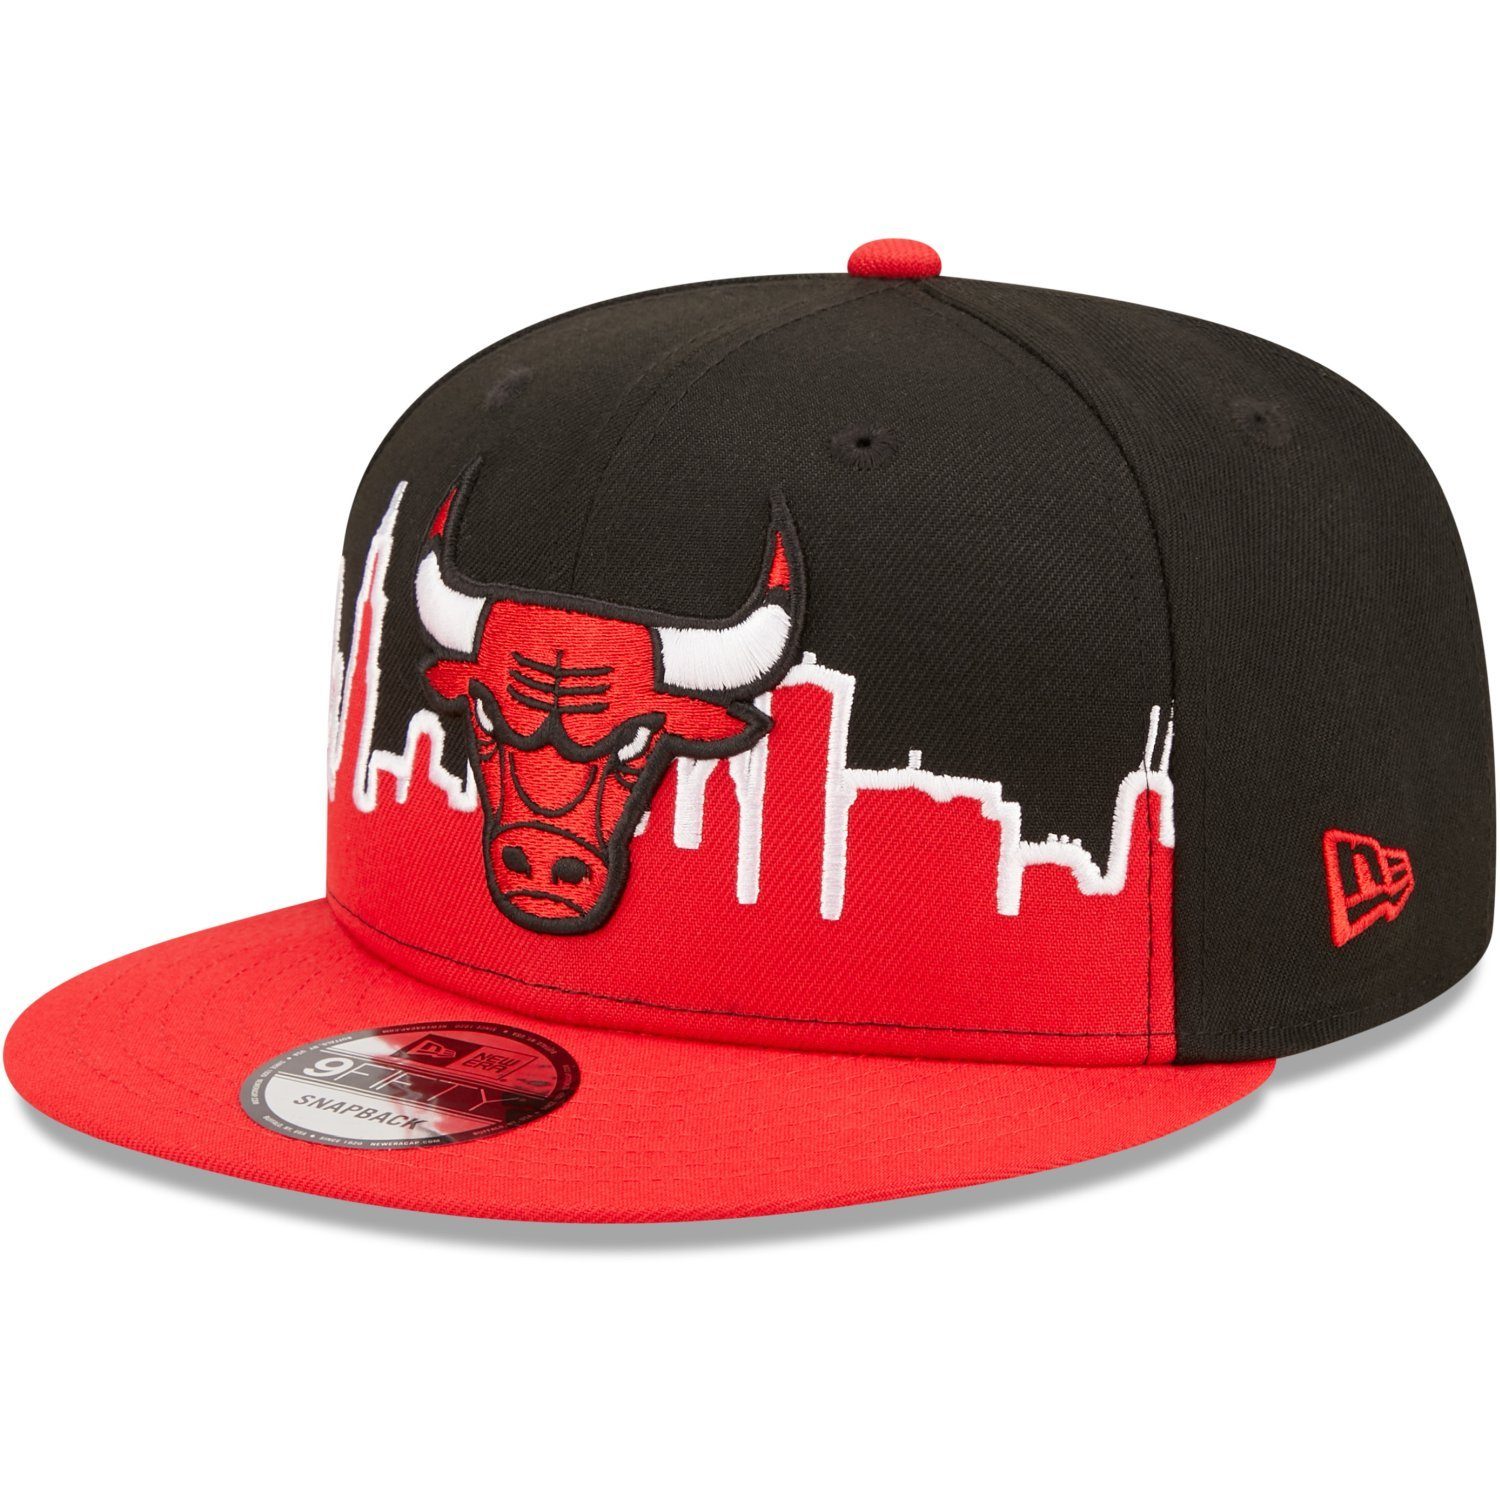 New Era Snapback Bulls 9FIFTY NBA Chicago Cap TIPOFF